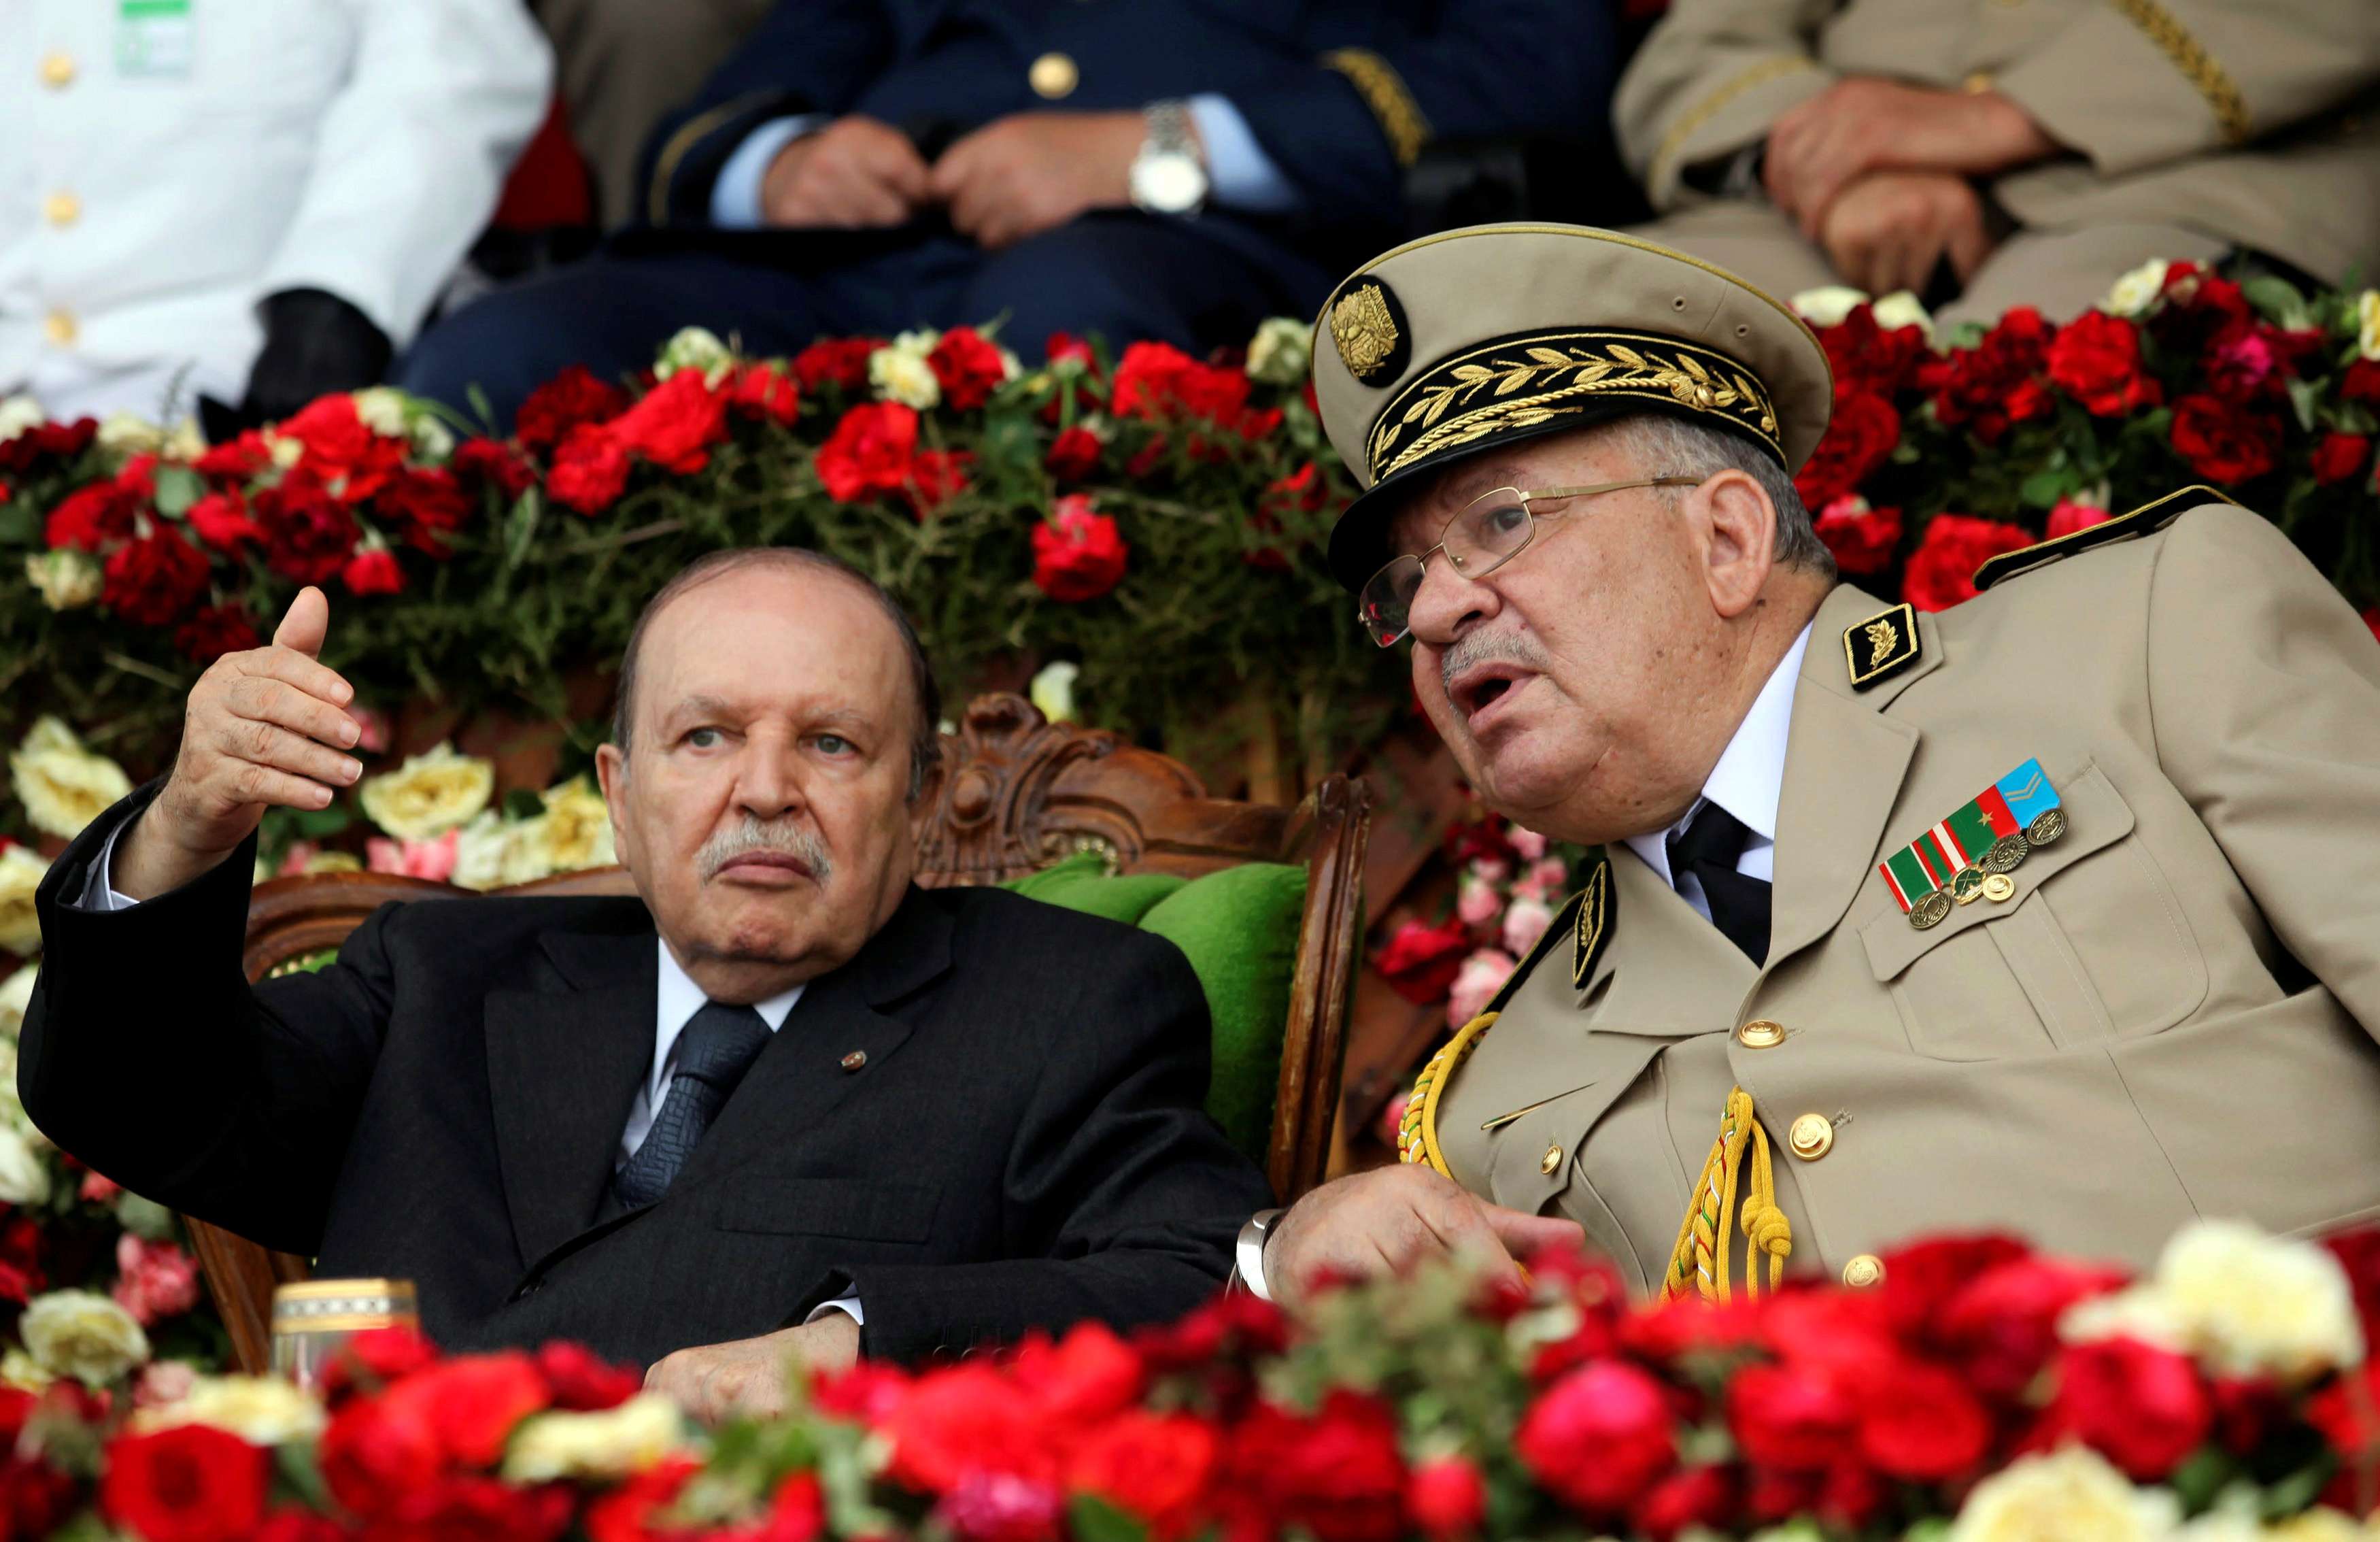 الفريق قايد صالح رئيس أركان الجيش الجزائري